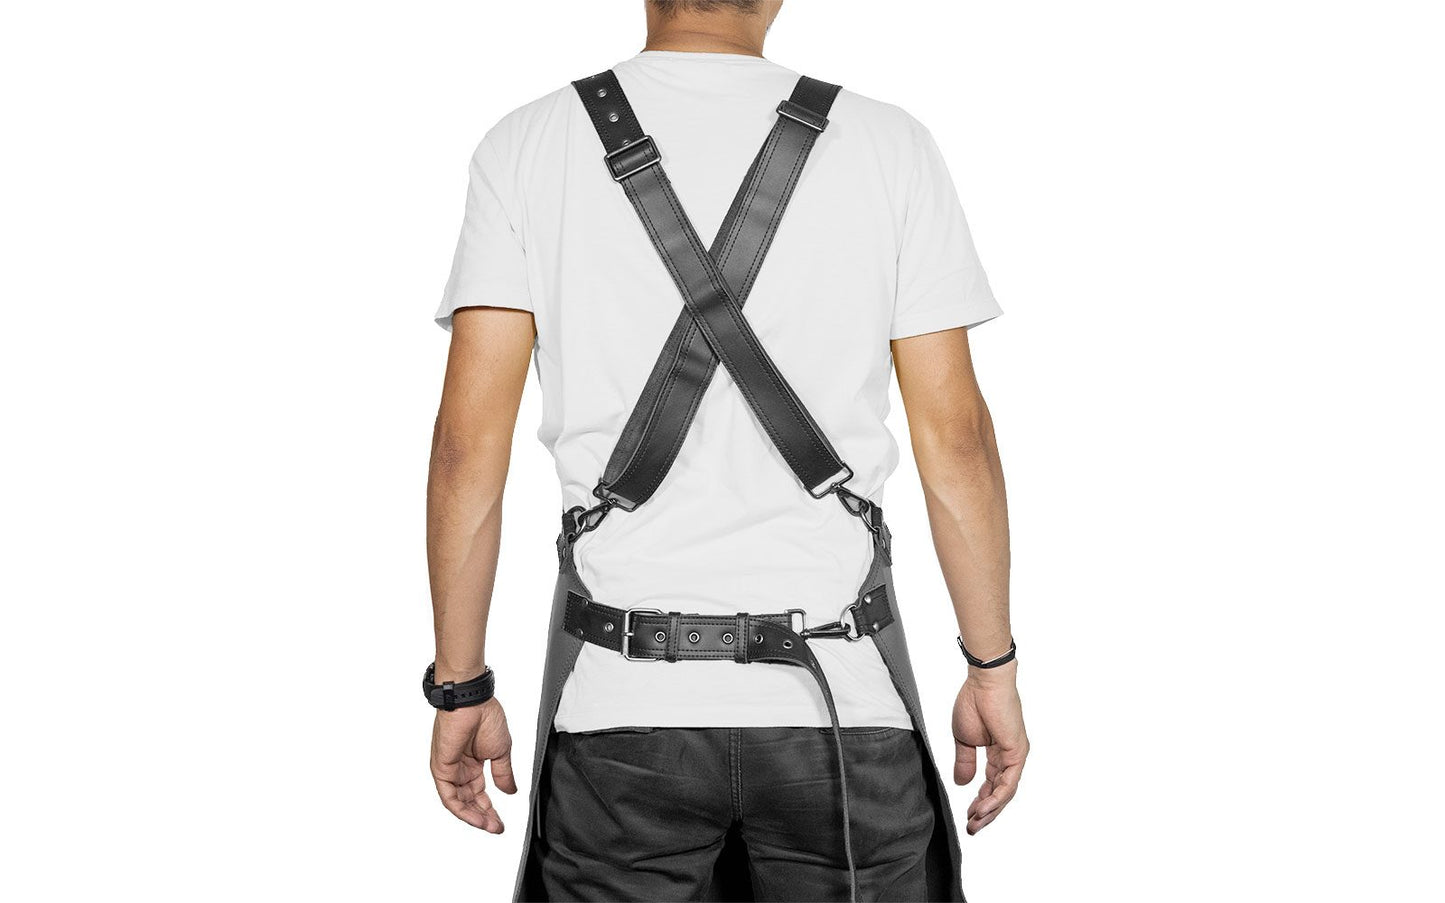 Rückenansicht der Leder-Grillschürze am Model getragen, überkreuzte Schultergurte und Hüftgurt, jeweils mehrfach verstellbar.